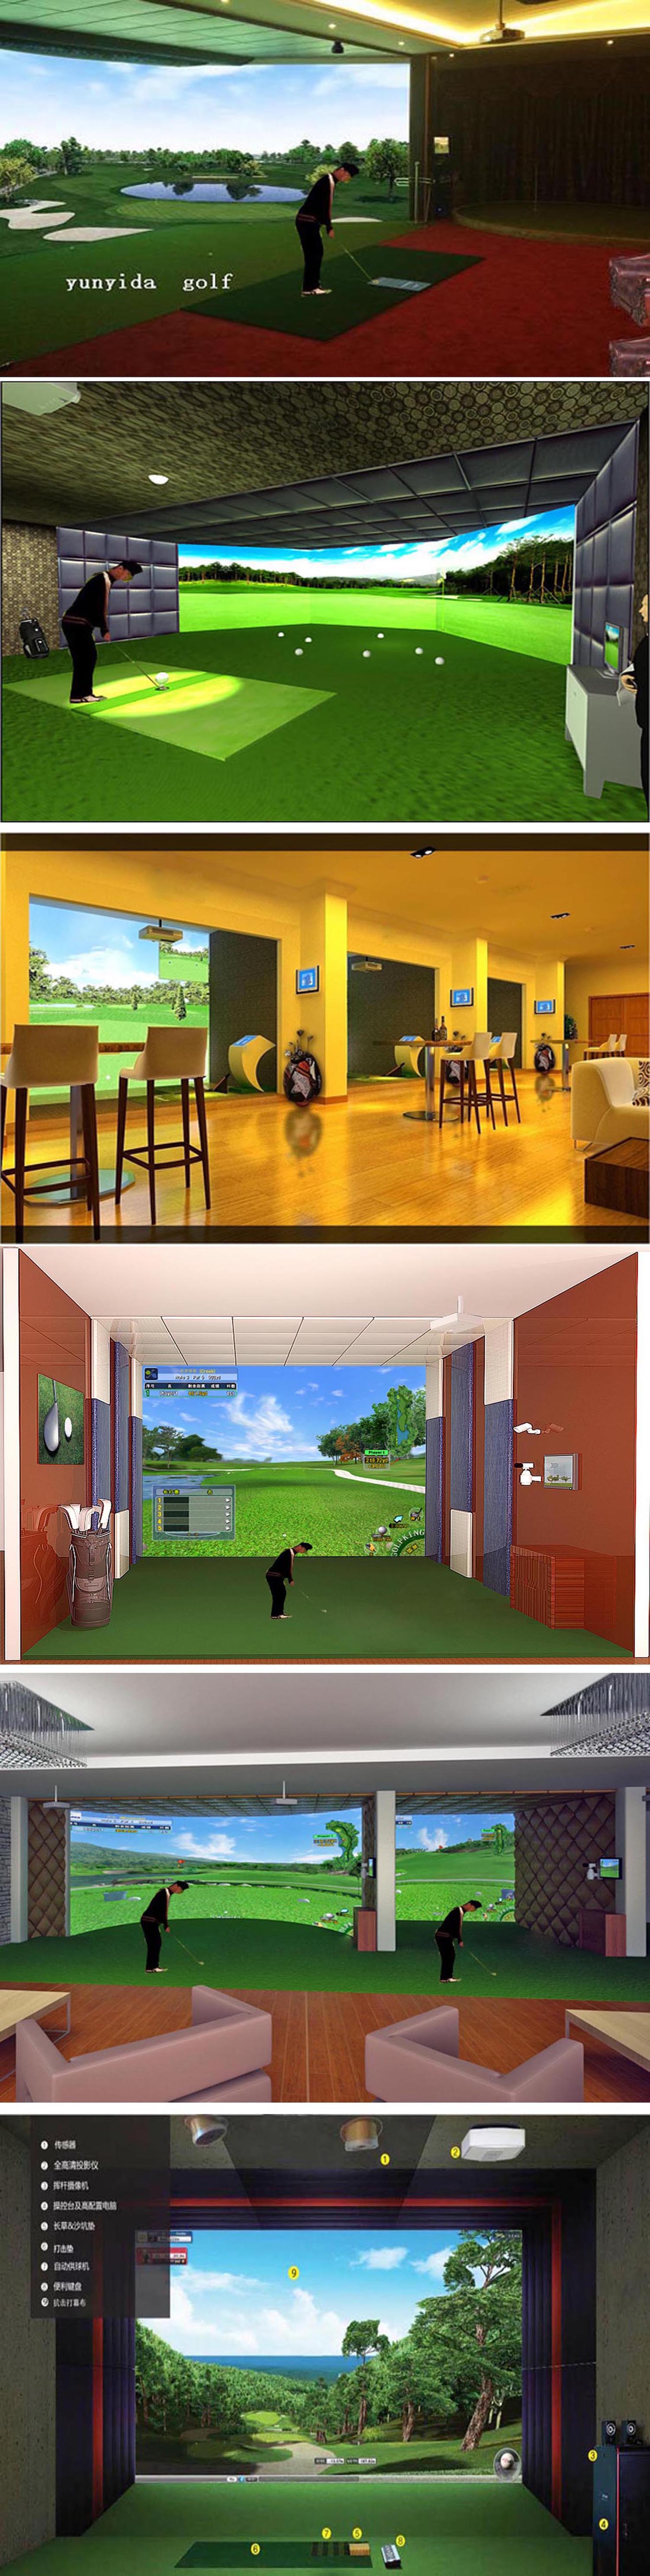 高尔夫模拟器球场 二.jpg